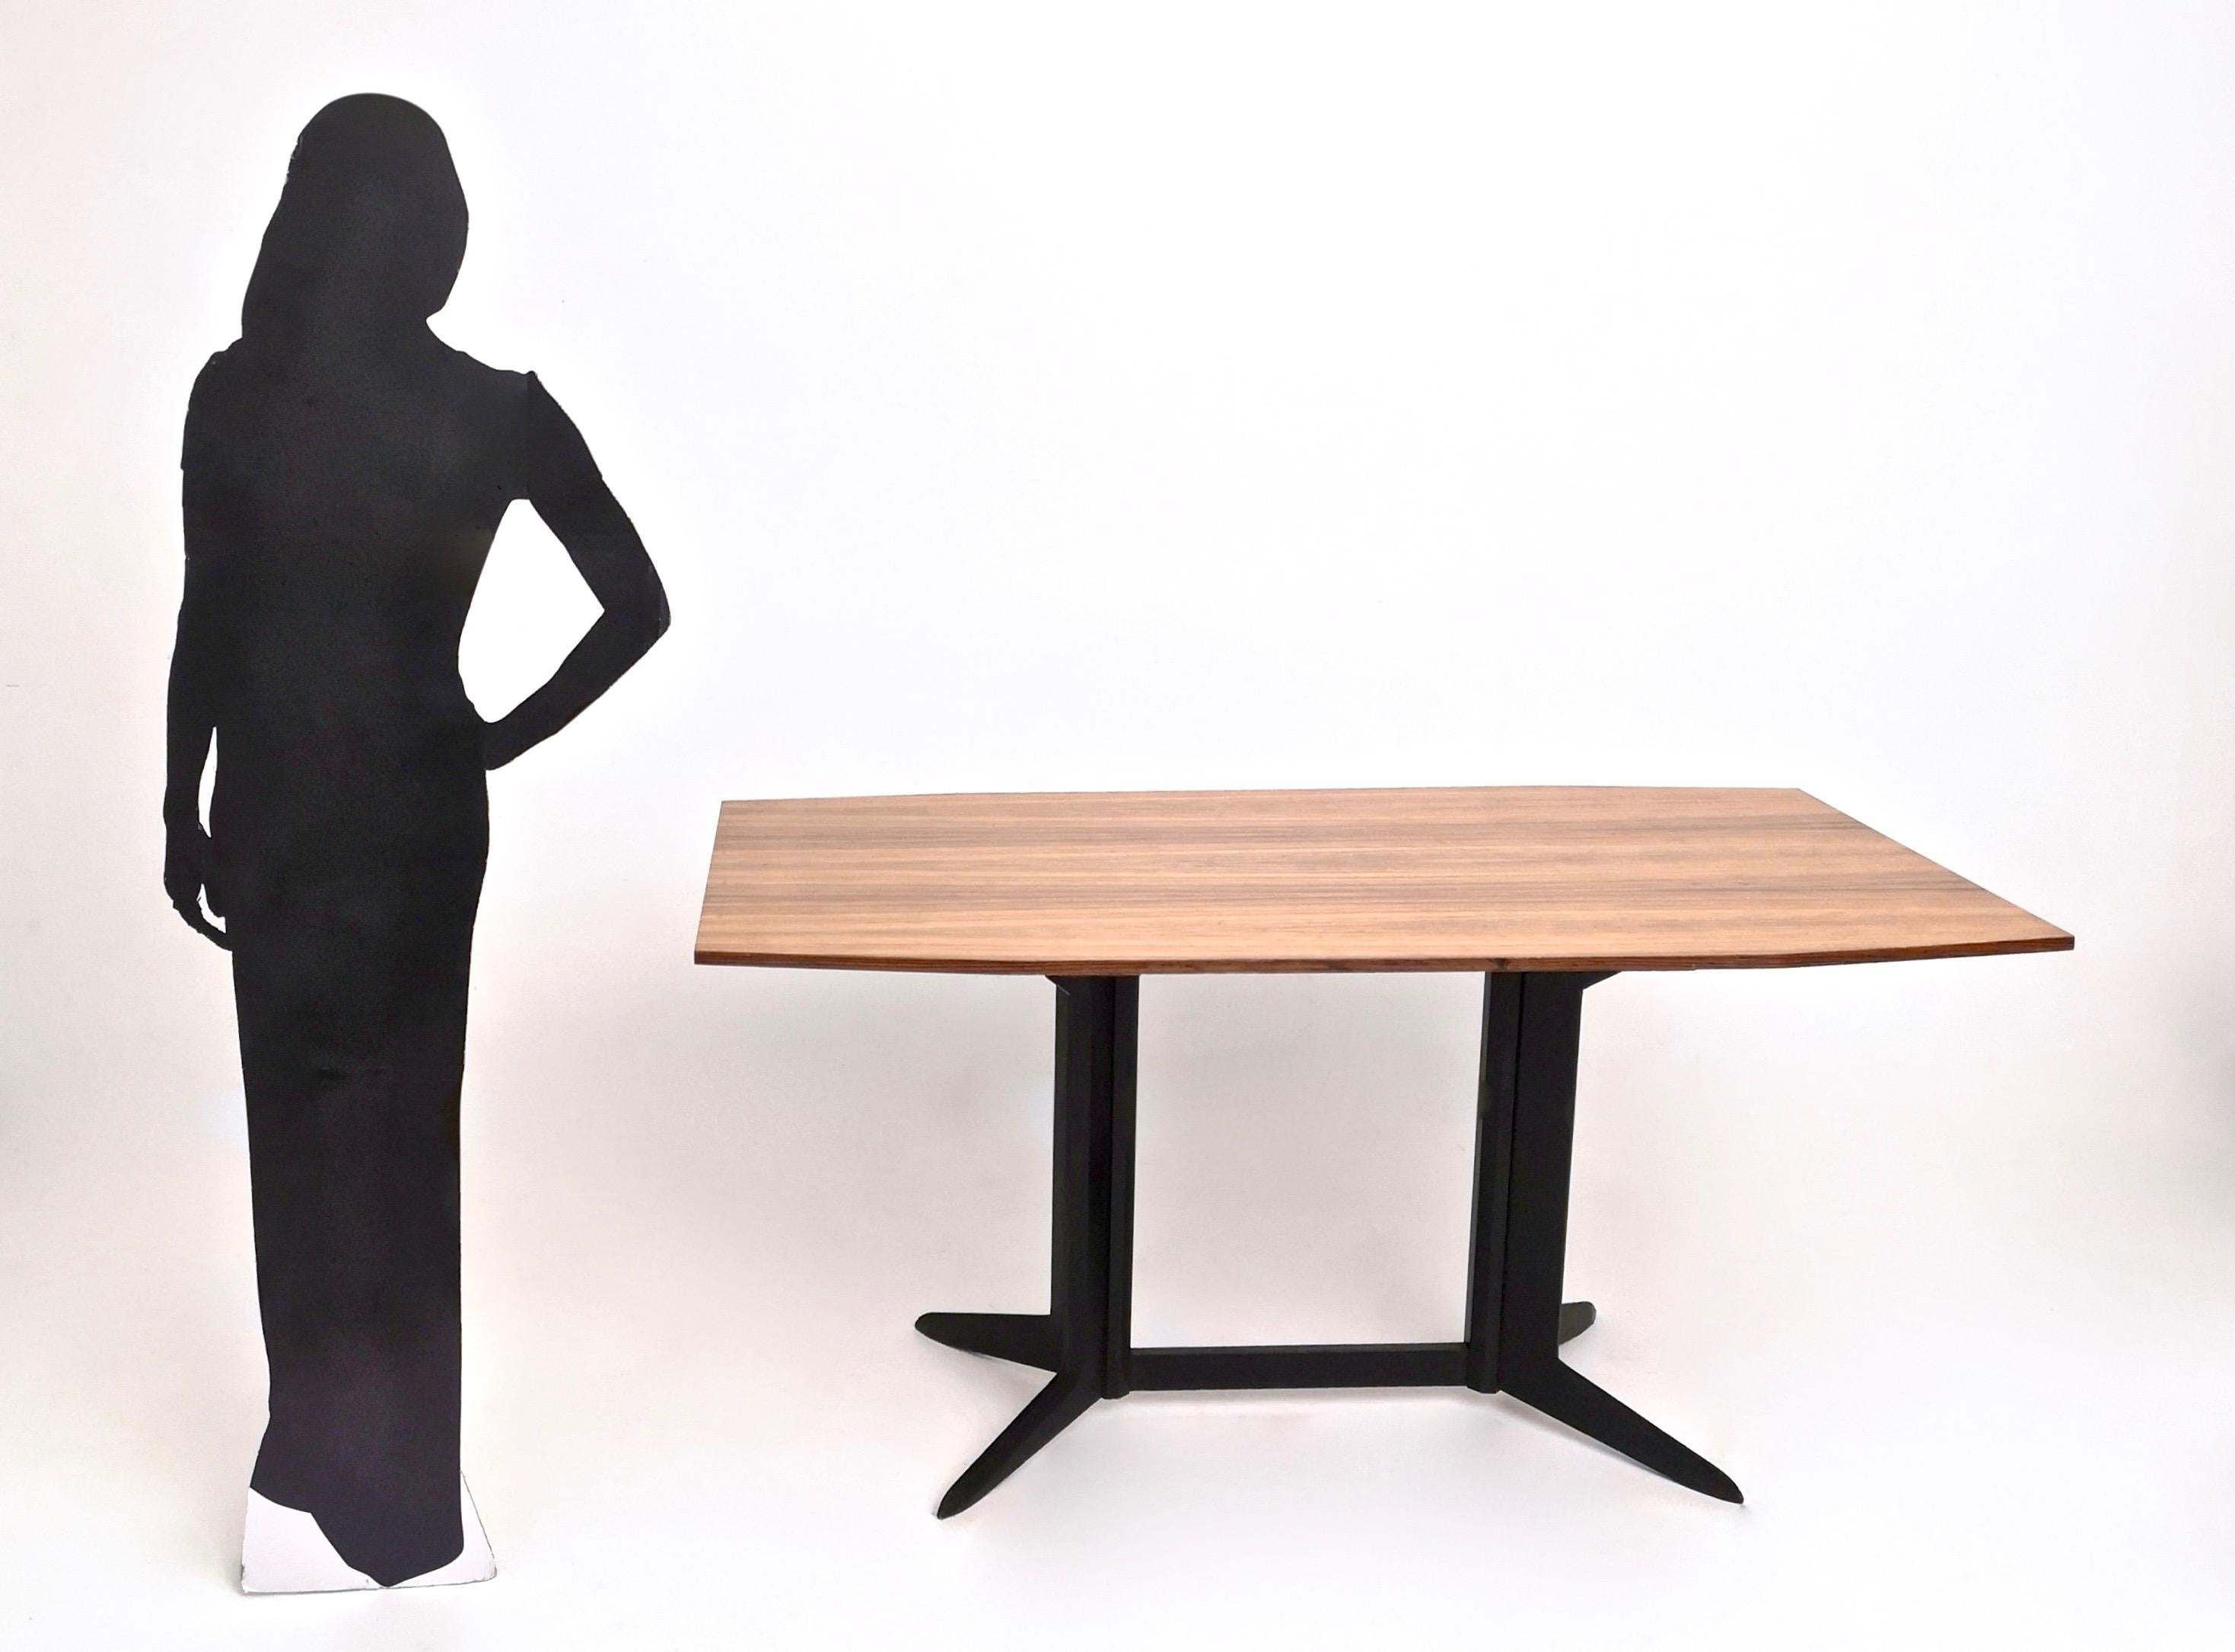 Hergestellt in Italien, 1960er Jahre.
Dieser Tisch hat ein Gestell aus ebonisiertem Holz und eine Platte aus Zebraholzfurnier. 
Da es sich um ein Vintage-Modell handelt, kann es leichte Gebrauchsspuren aufweisen, aber es befindet sich in einem